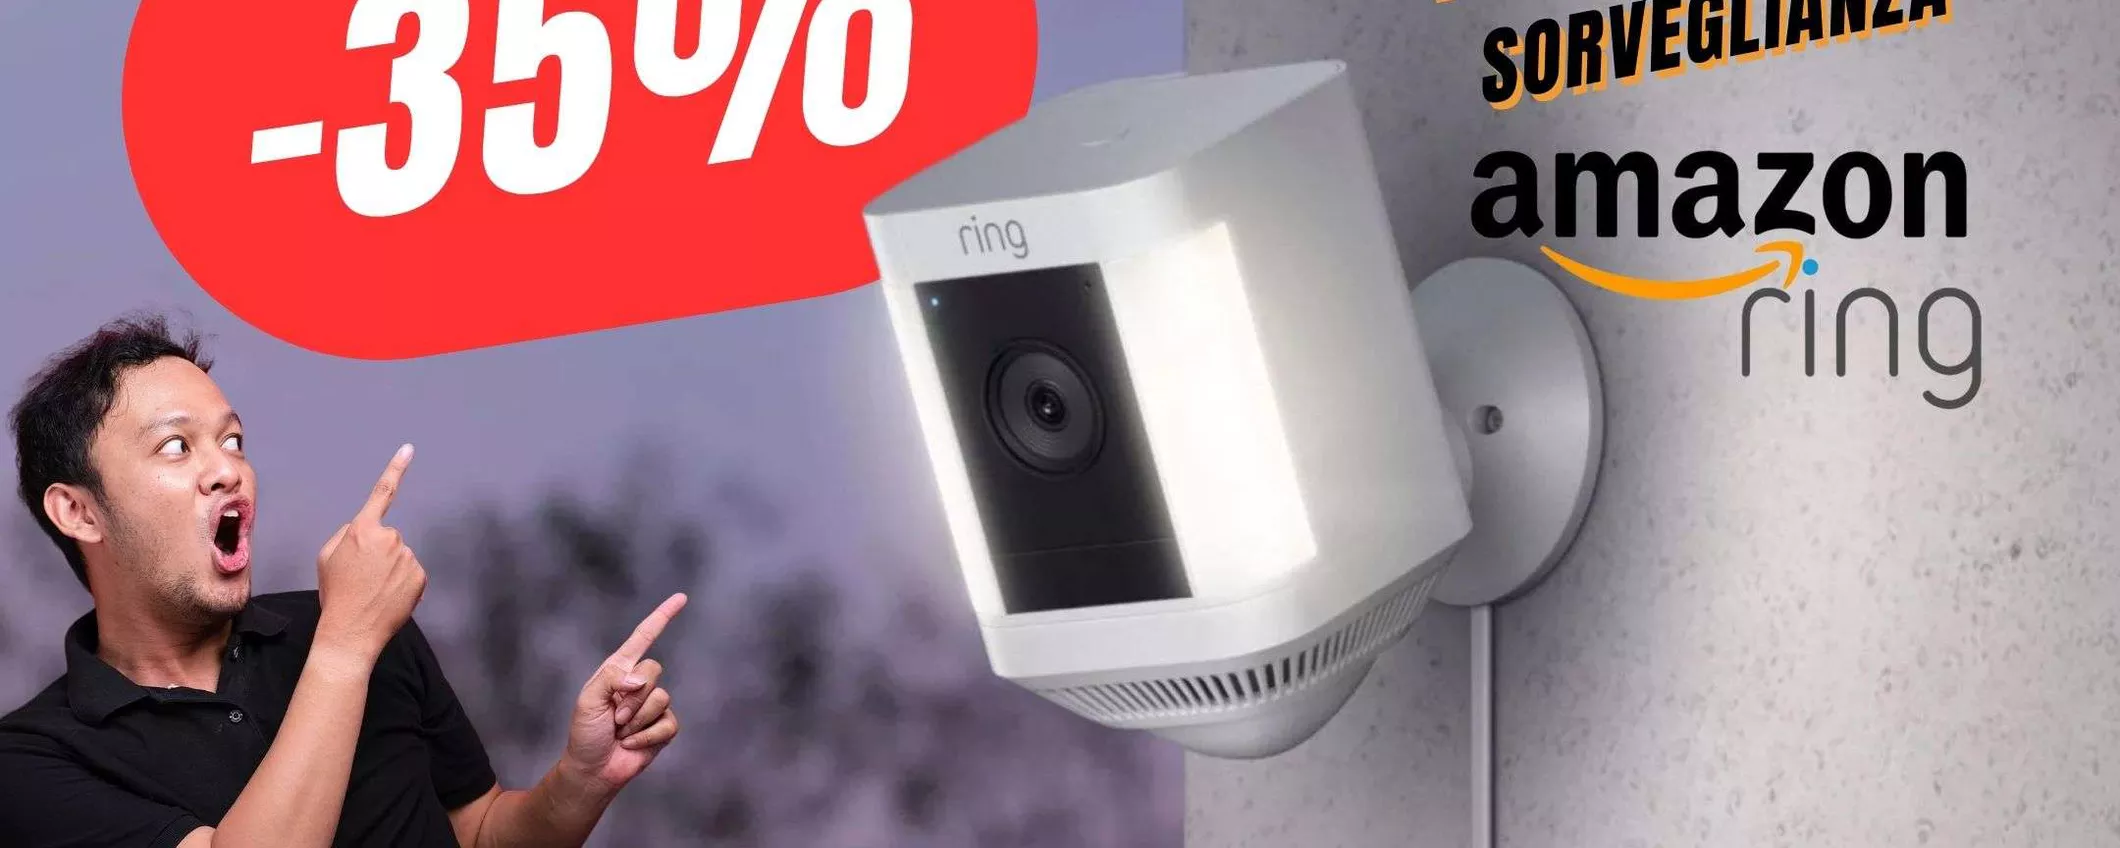 La Videocamera di Sorveglianza DEFINITIVA è in sconto del 35% su Amazon!